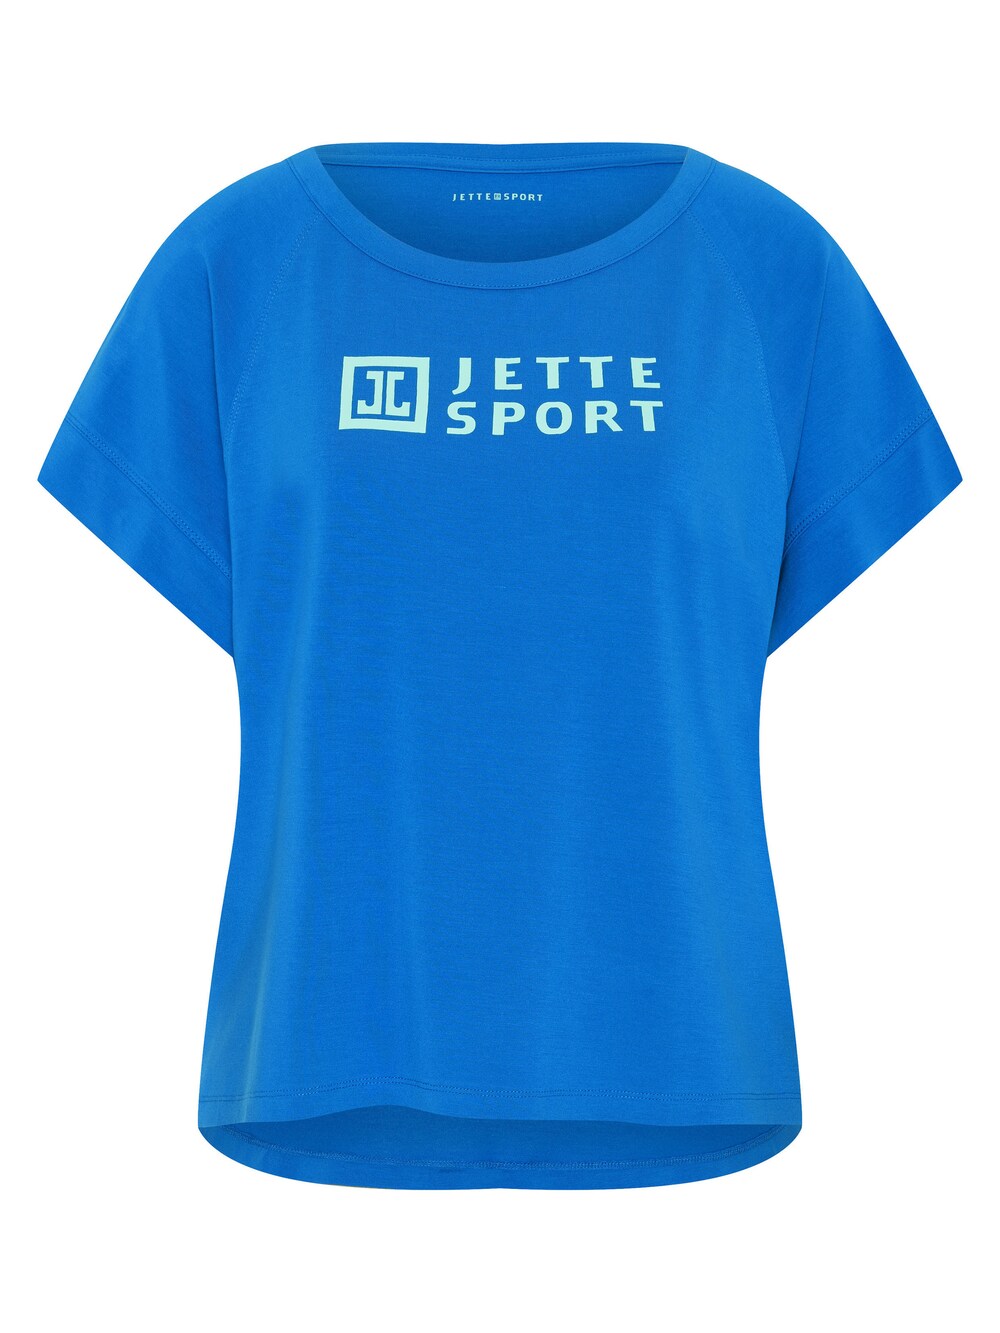 Рубашка Jette, голубое небо голубое небо